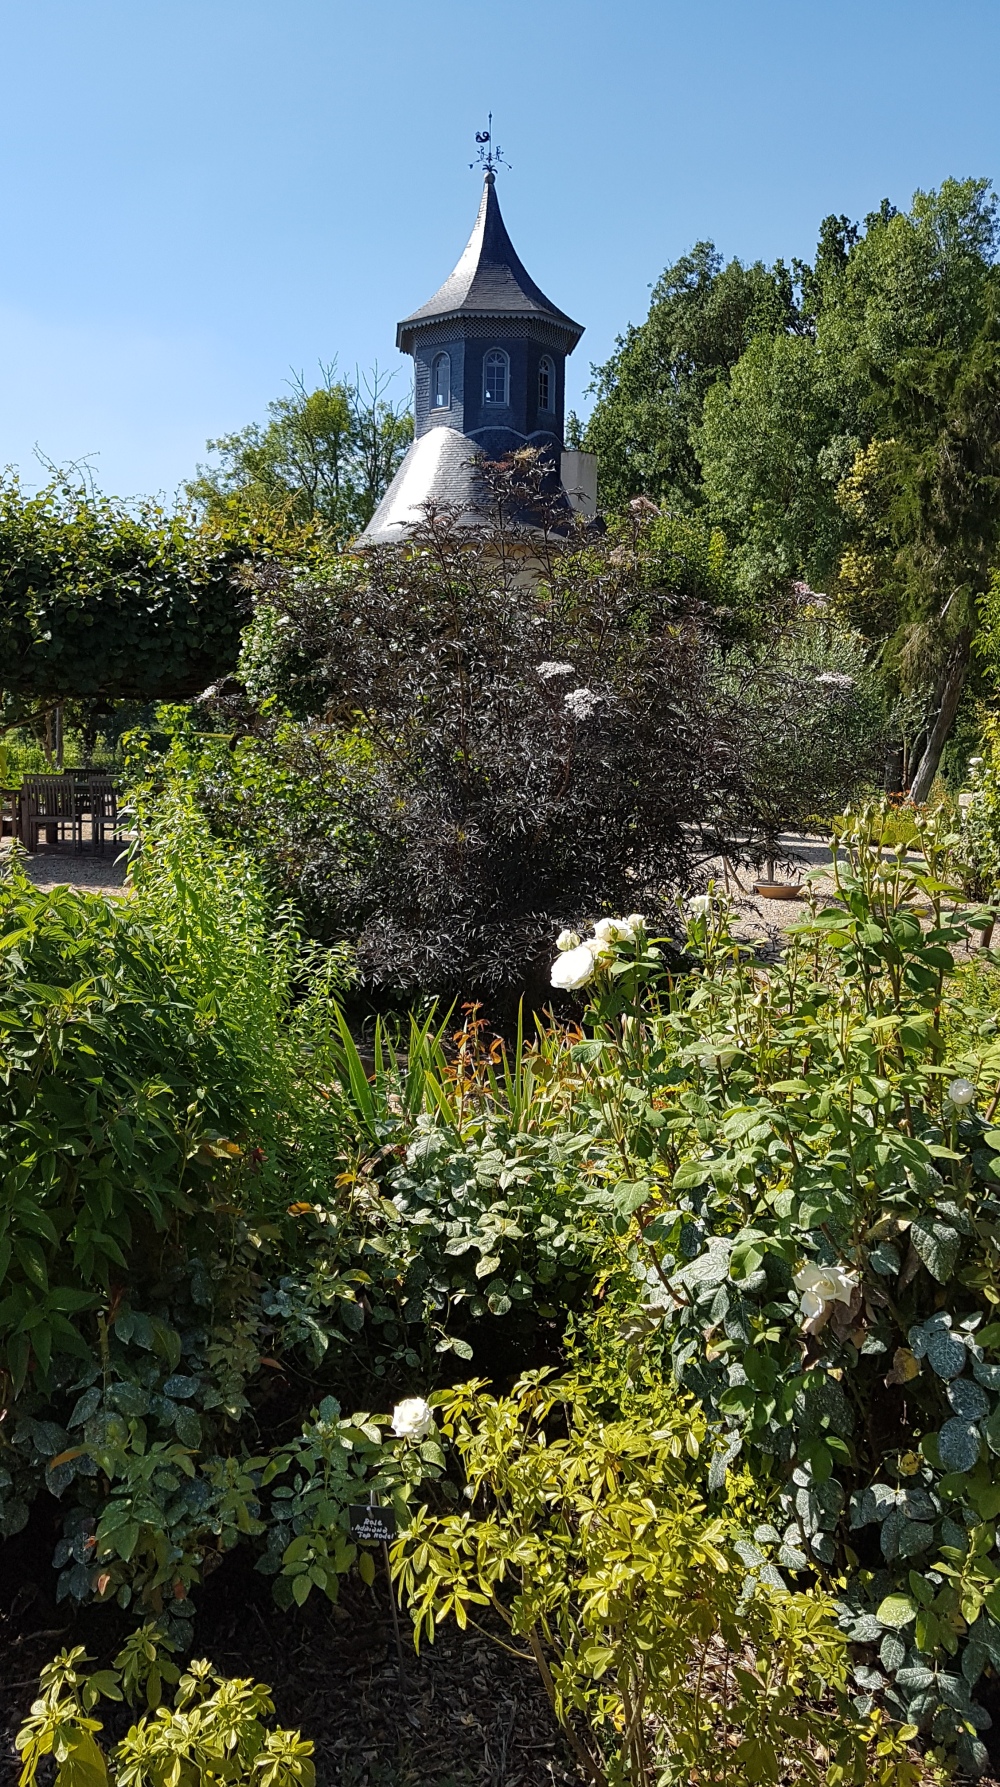 Scent garden at Chateau de Reignac